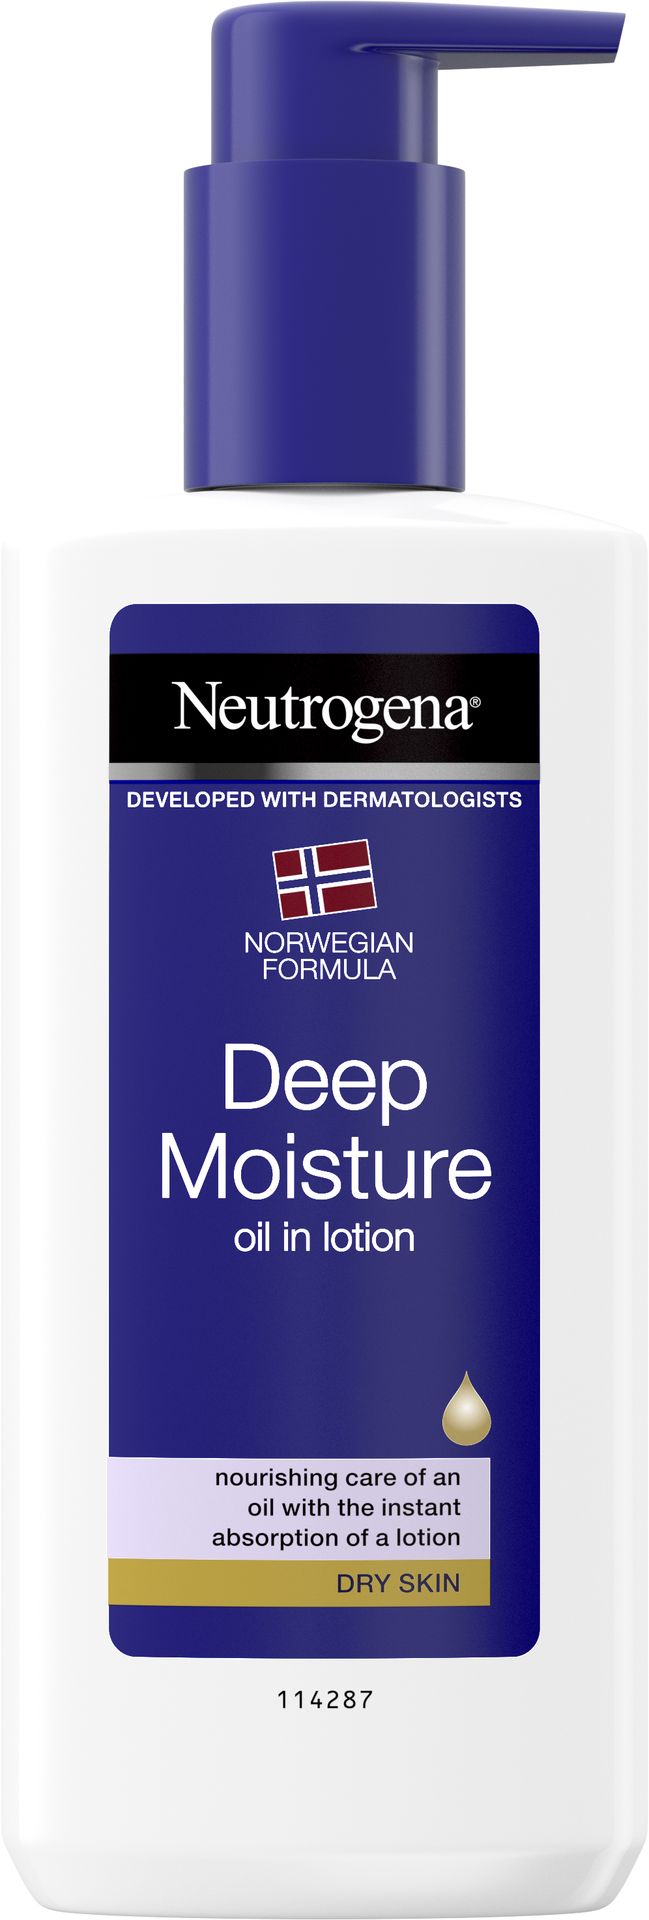 Neutrogena Formuła Norweska  Nawilżająca emulsja do ciała z olejkiem sezamowym 250 ml